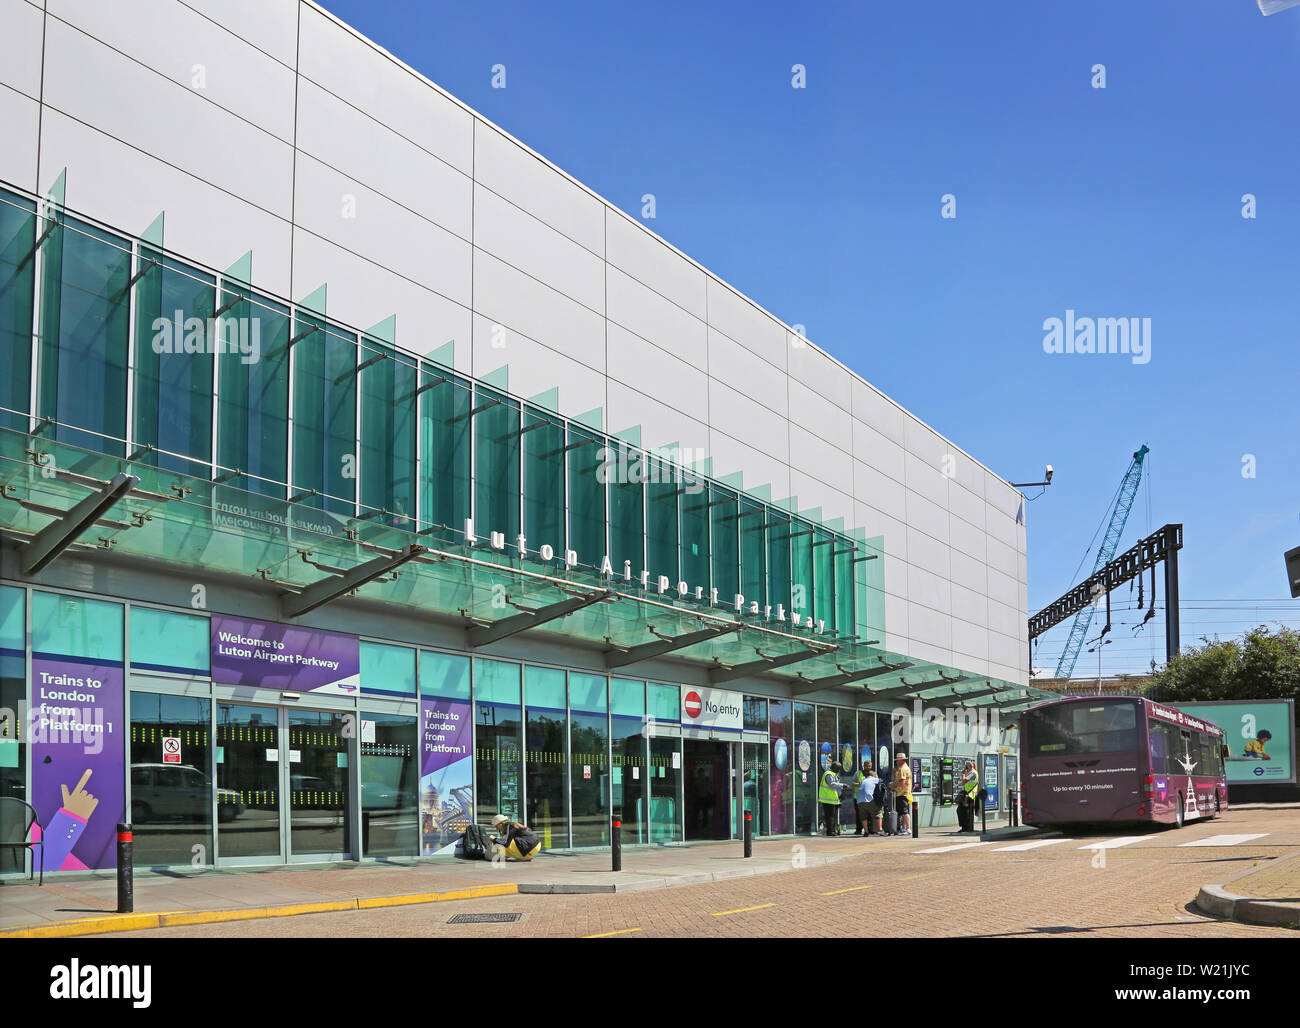 Dall' Aeroporto di Luton a Londra. Ingresso di Luton Airport Parkway station. Passeggeri attendere per unire il bus navetta per il terminal aeroportuale. Foto Stock